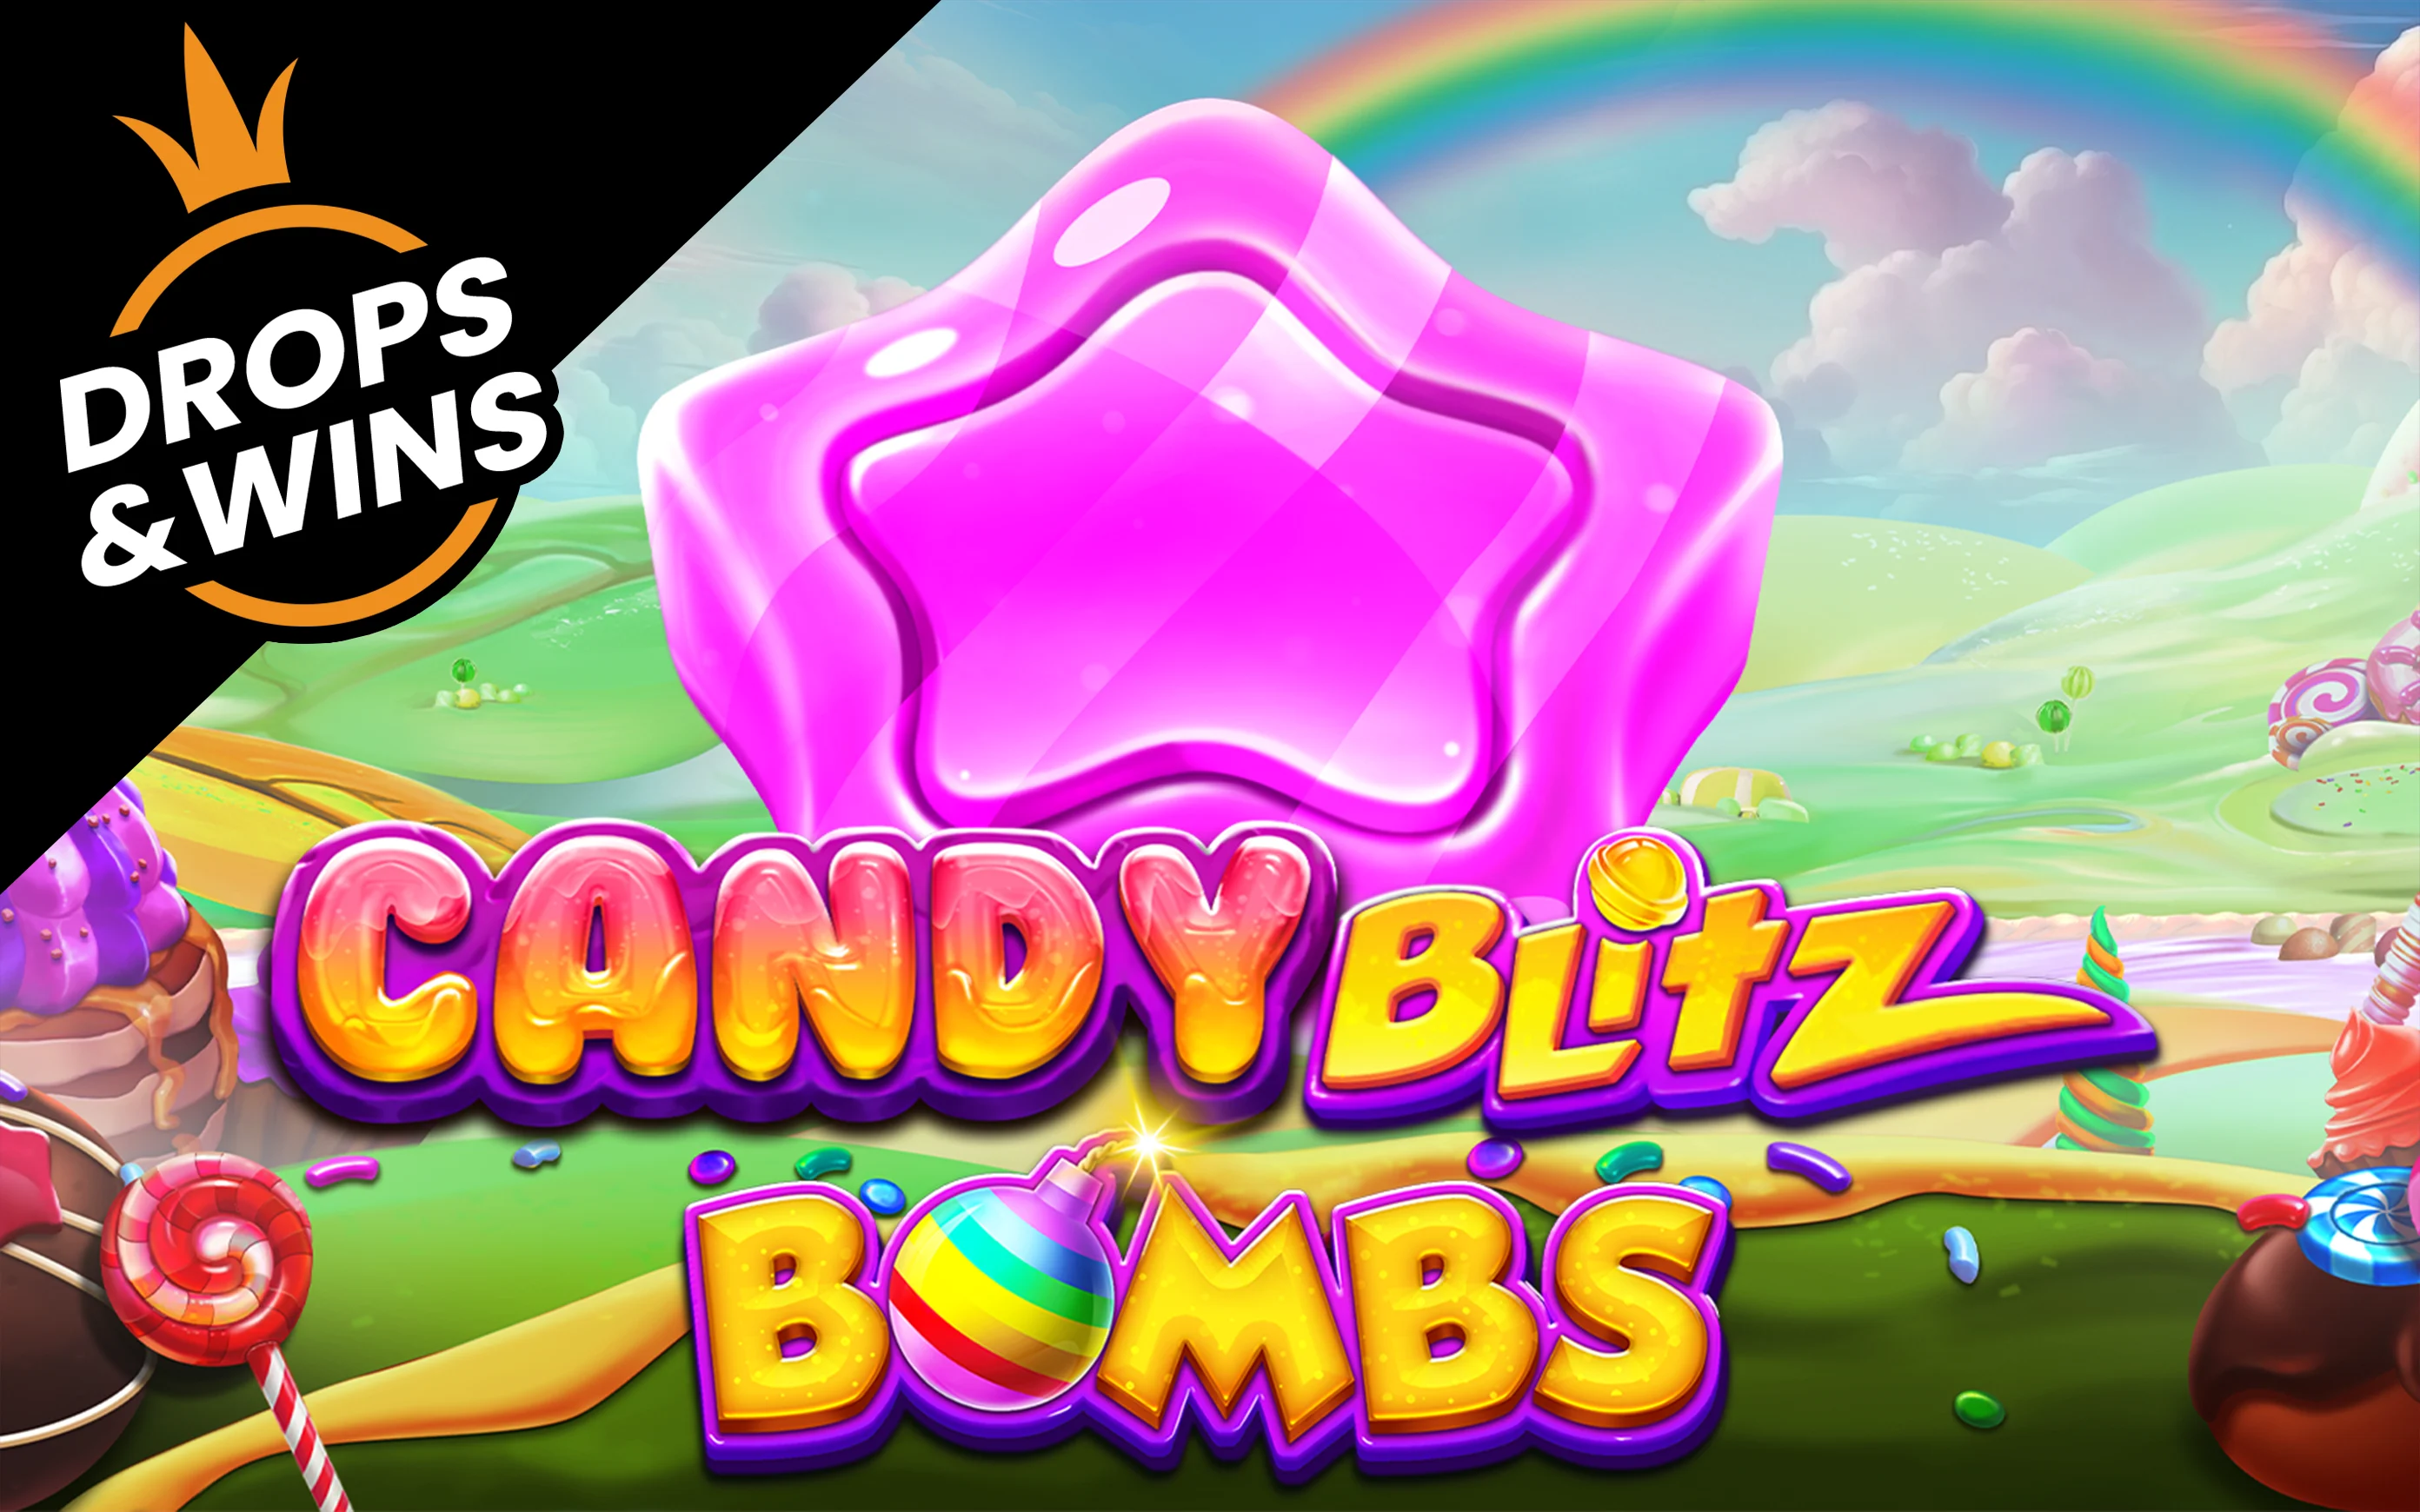 Spielen Sie Candy Blitz Bombs auf Starcasino.be-Online-Casino